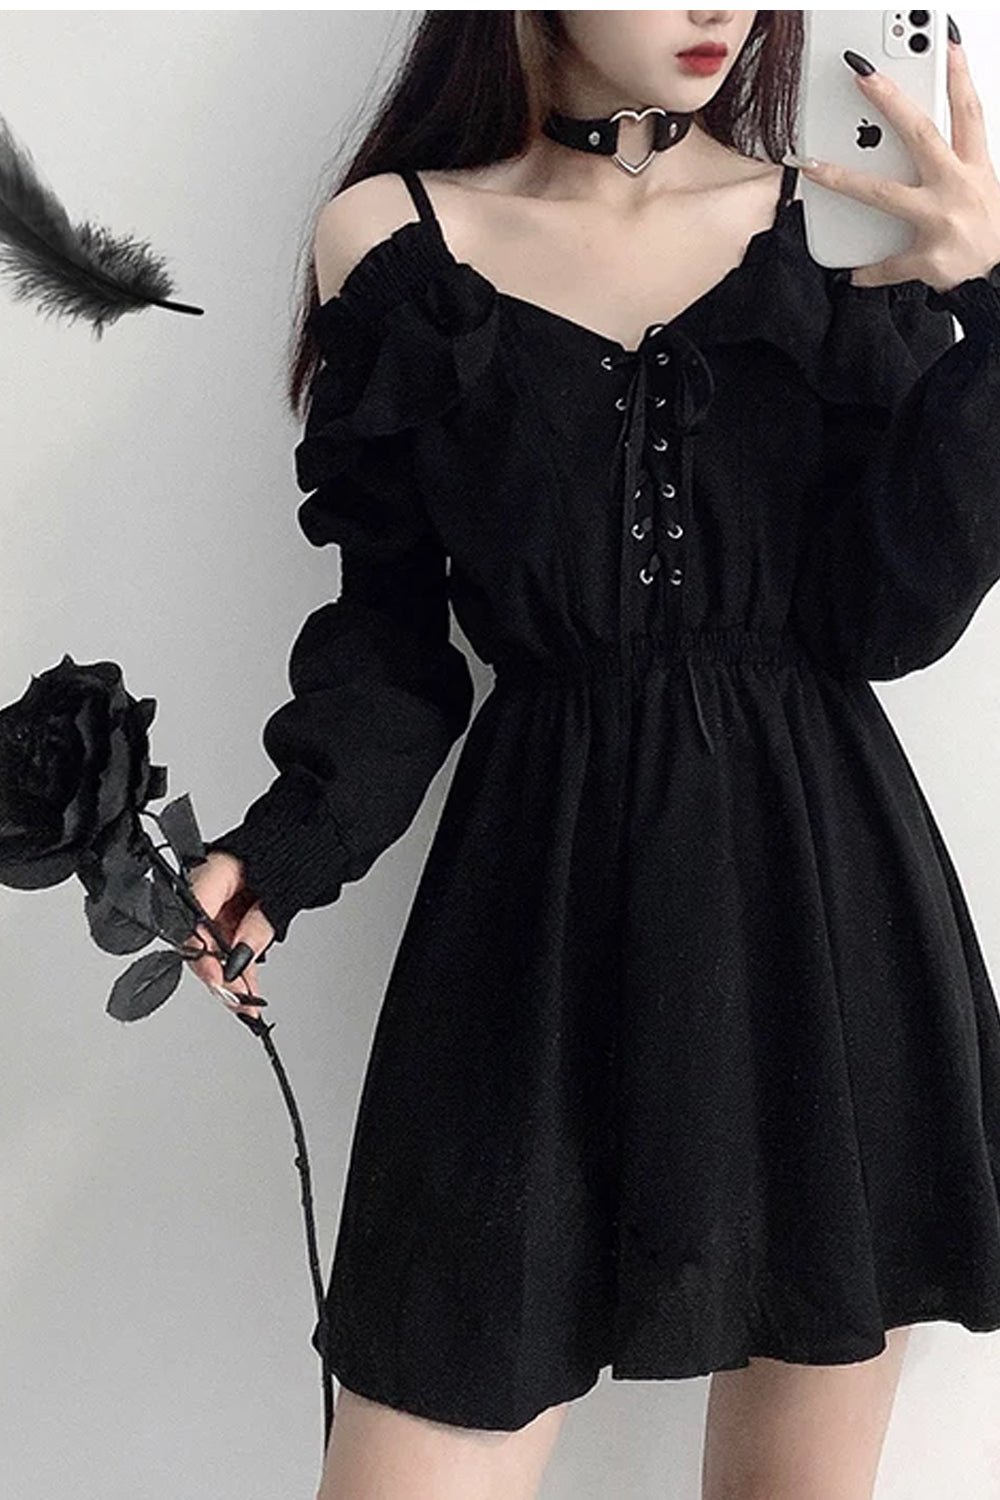 Long Sleeve Off Shoulder Black Gothic Dress